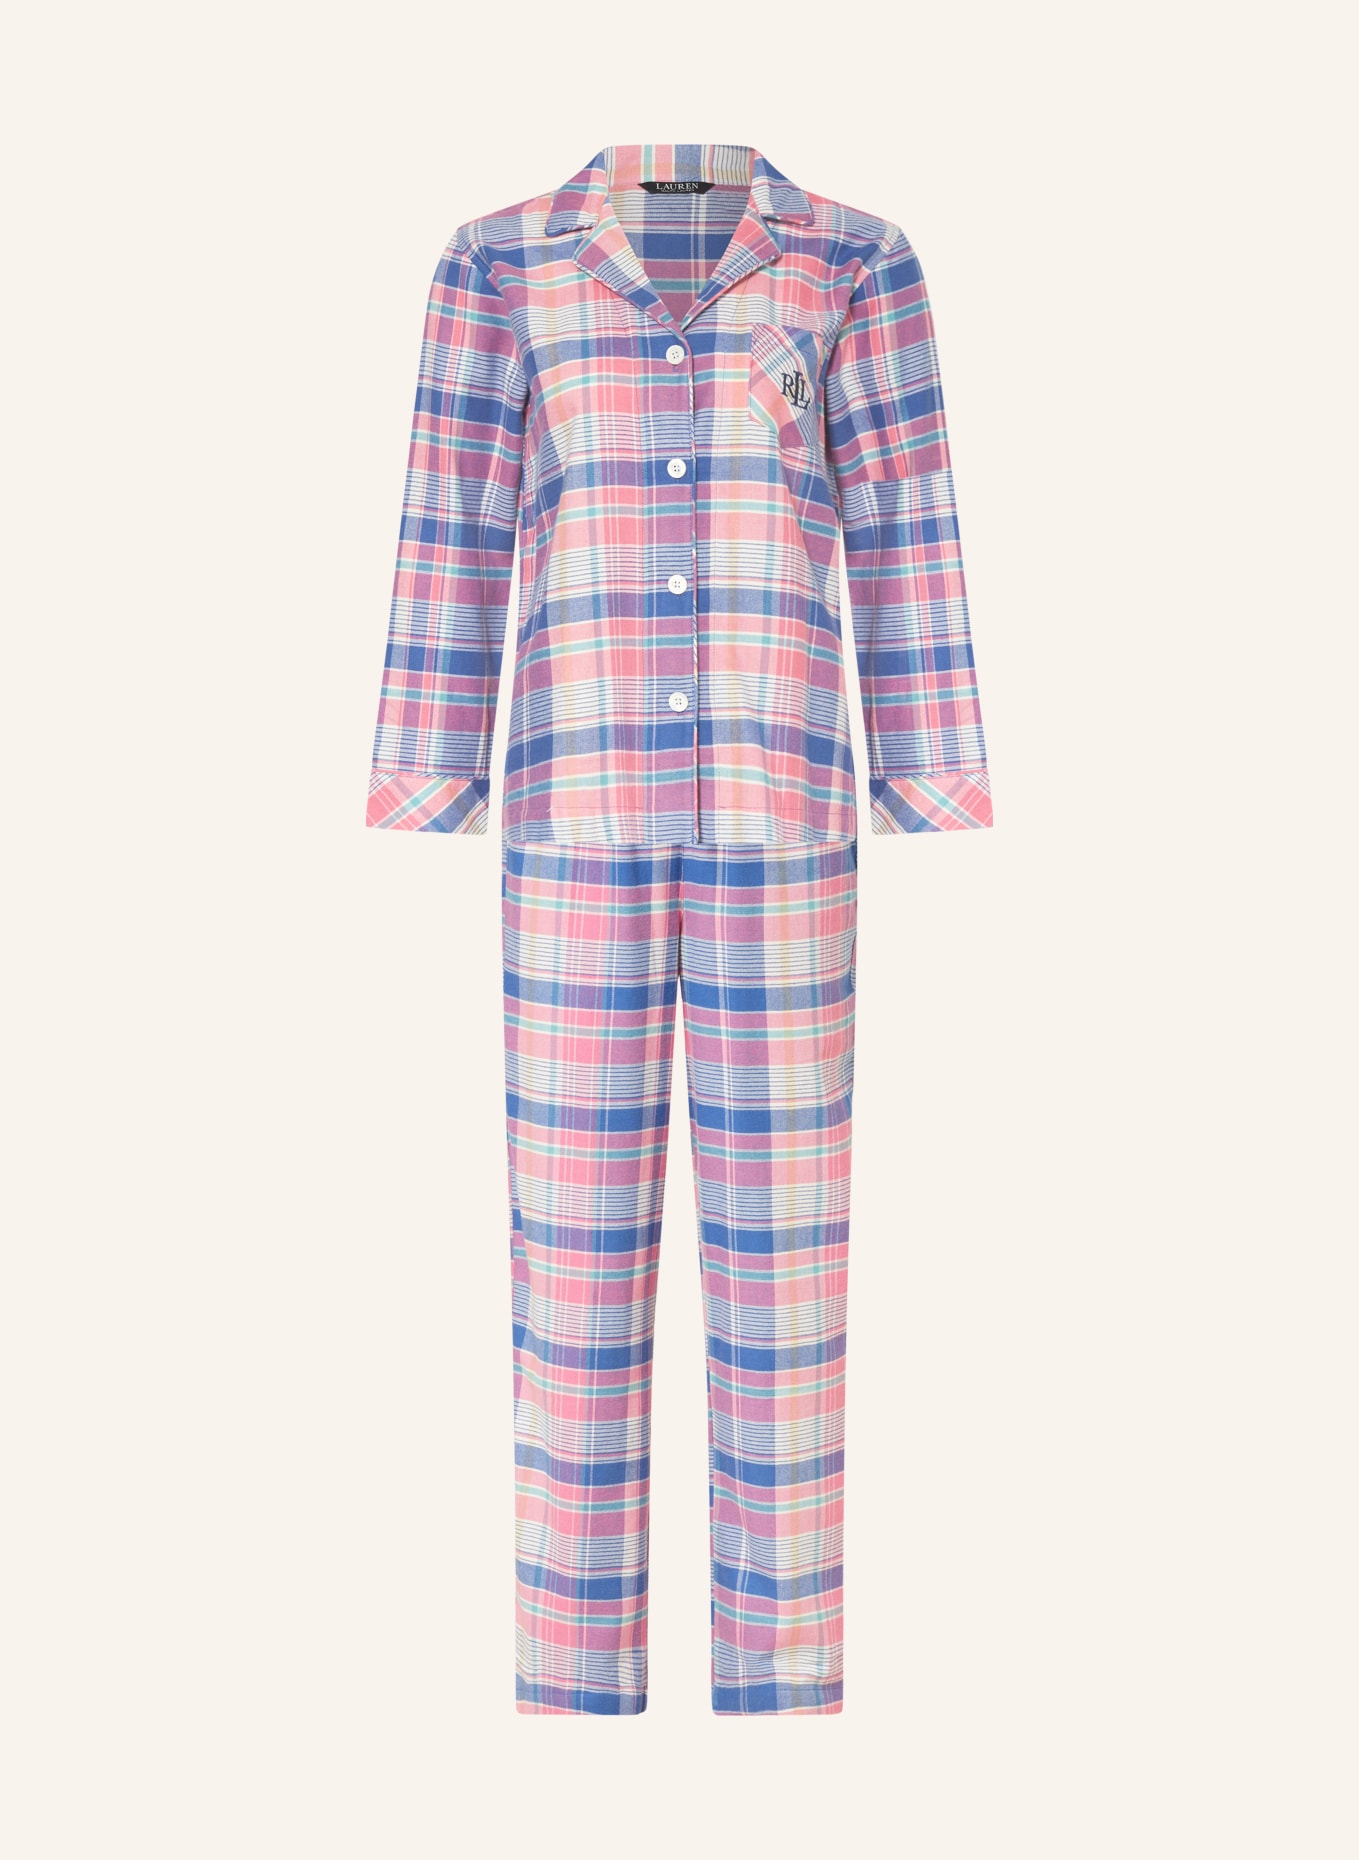 LAUREN RALPH LAUREN Schlafanzug BRUSHED TWILL, Farbe: ROSA/ BLAU/ WEISS (Bild 1)